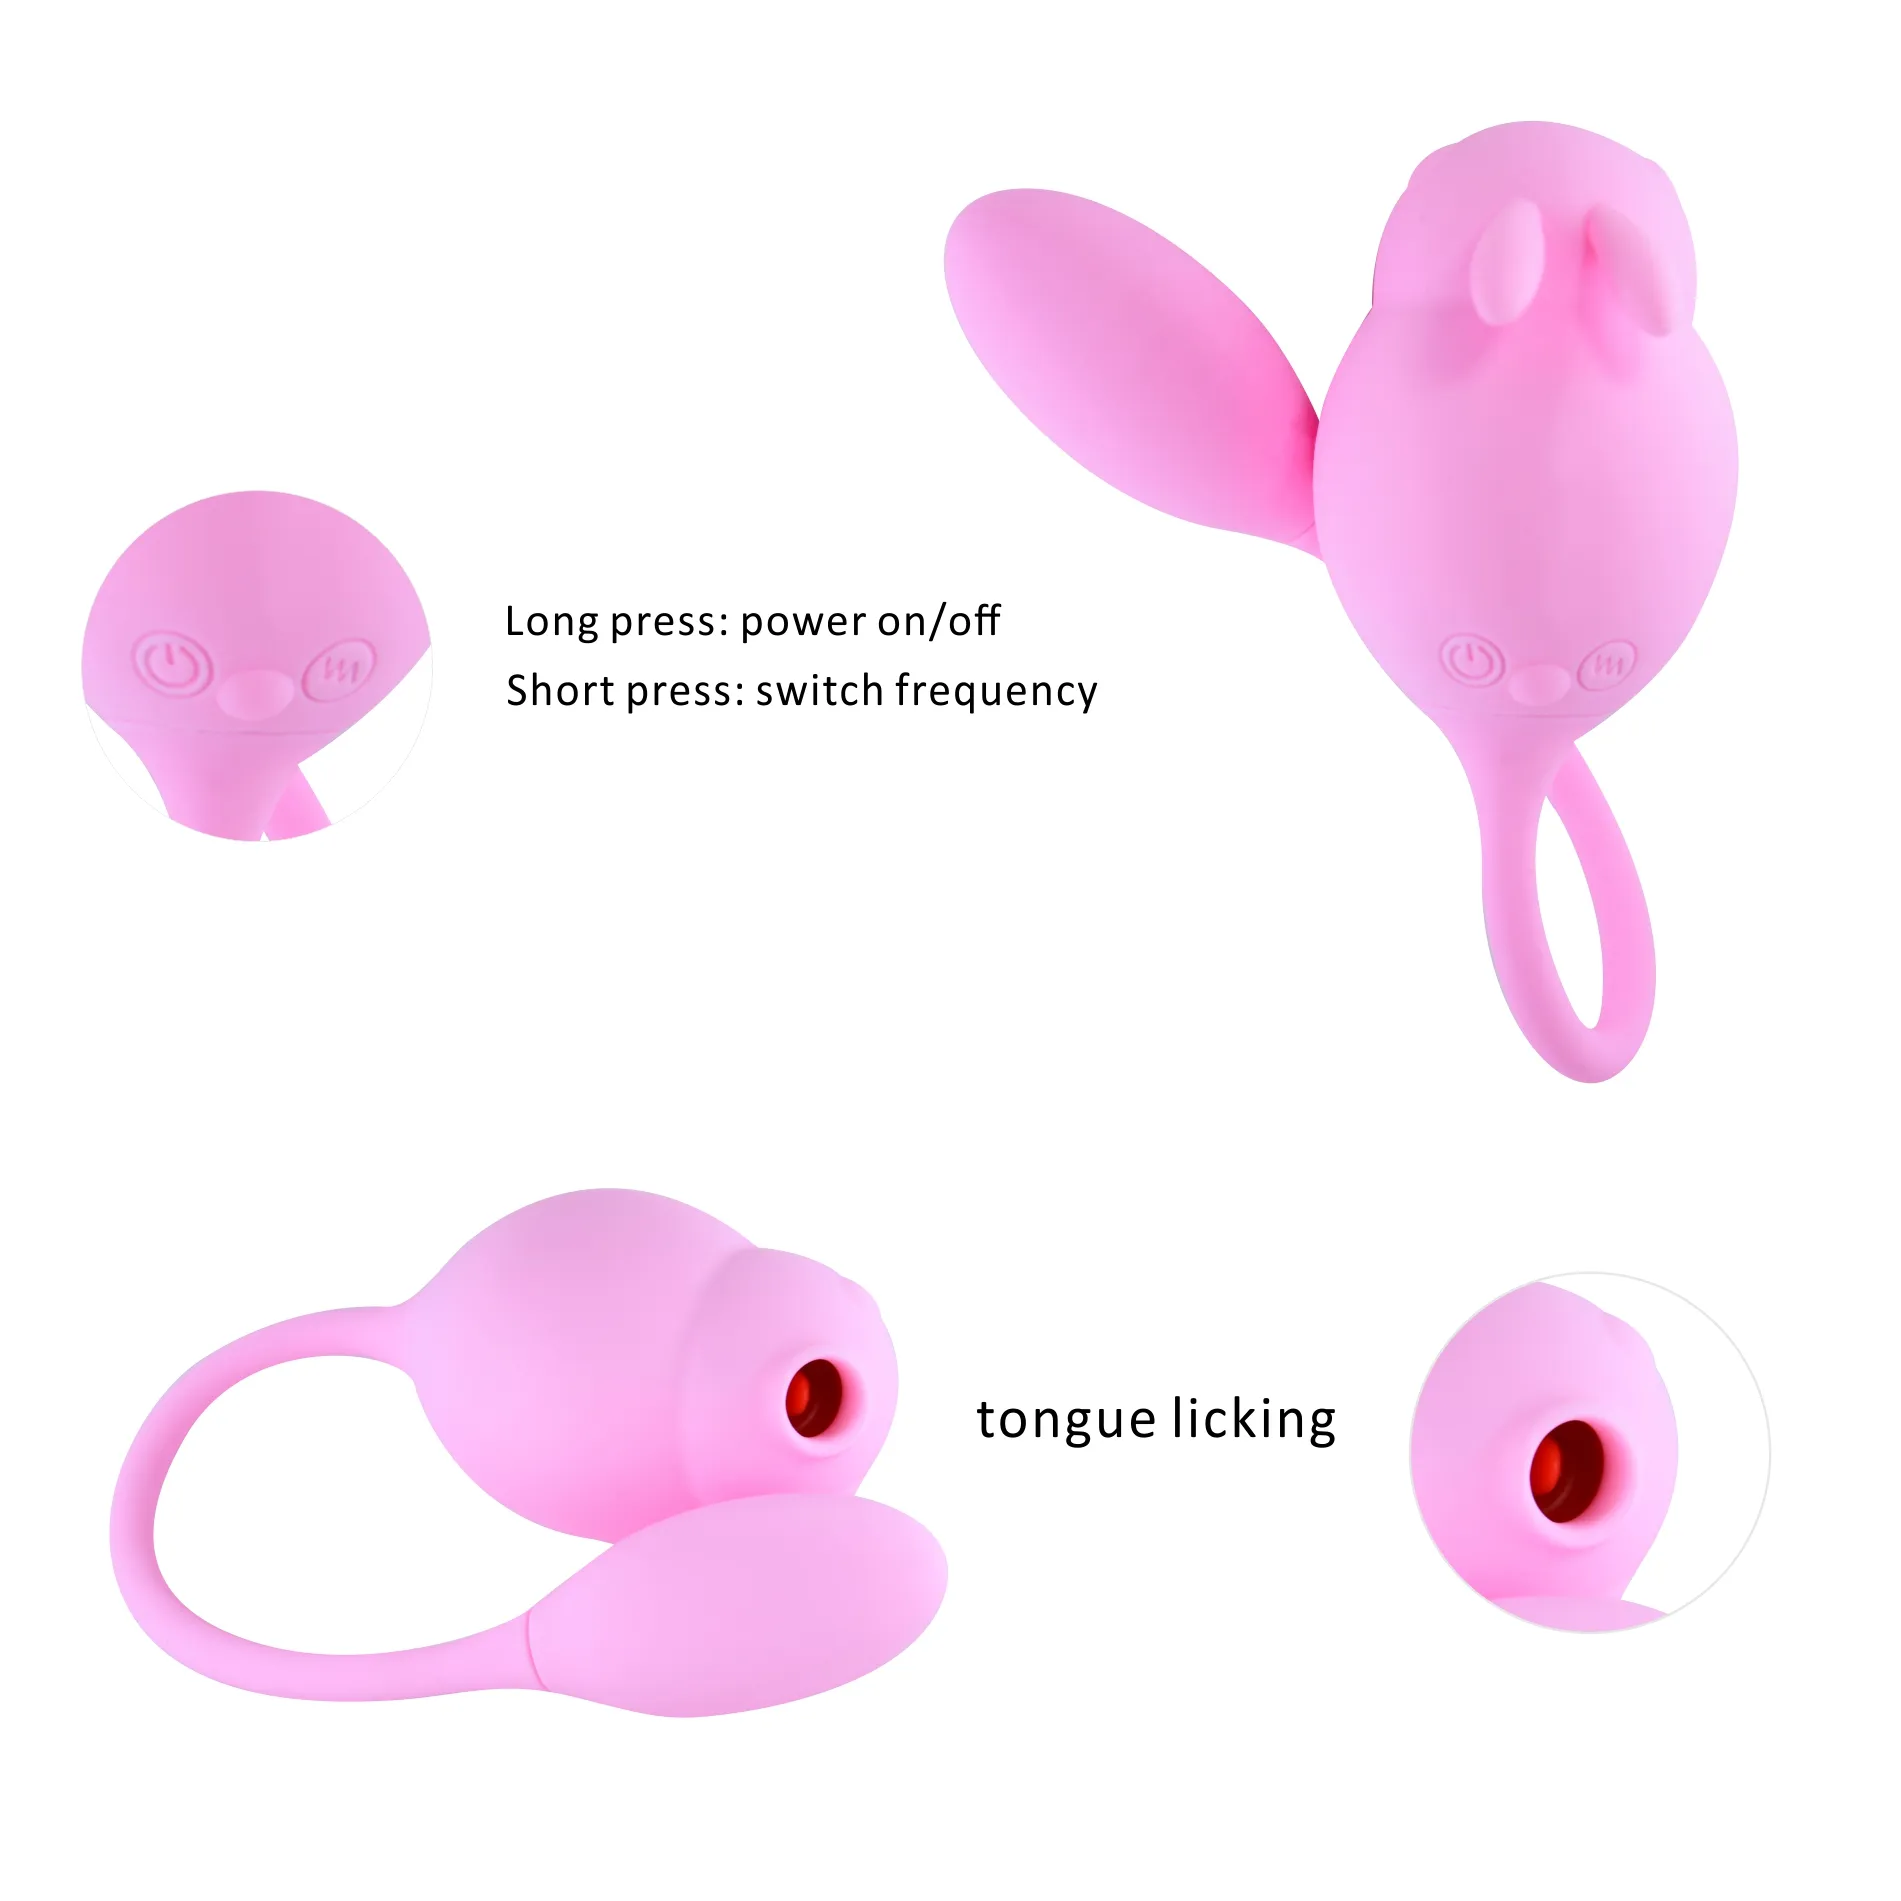 Günstige Rabbit Tumbler AV-Stick Mini starke Shake Flasche Massage Vibrator Erwachsenen Sex Produkte weiblichen Mastur bator